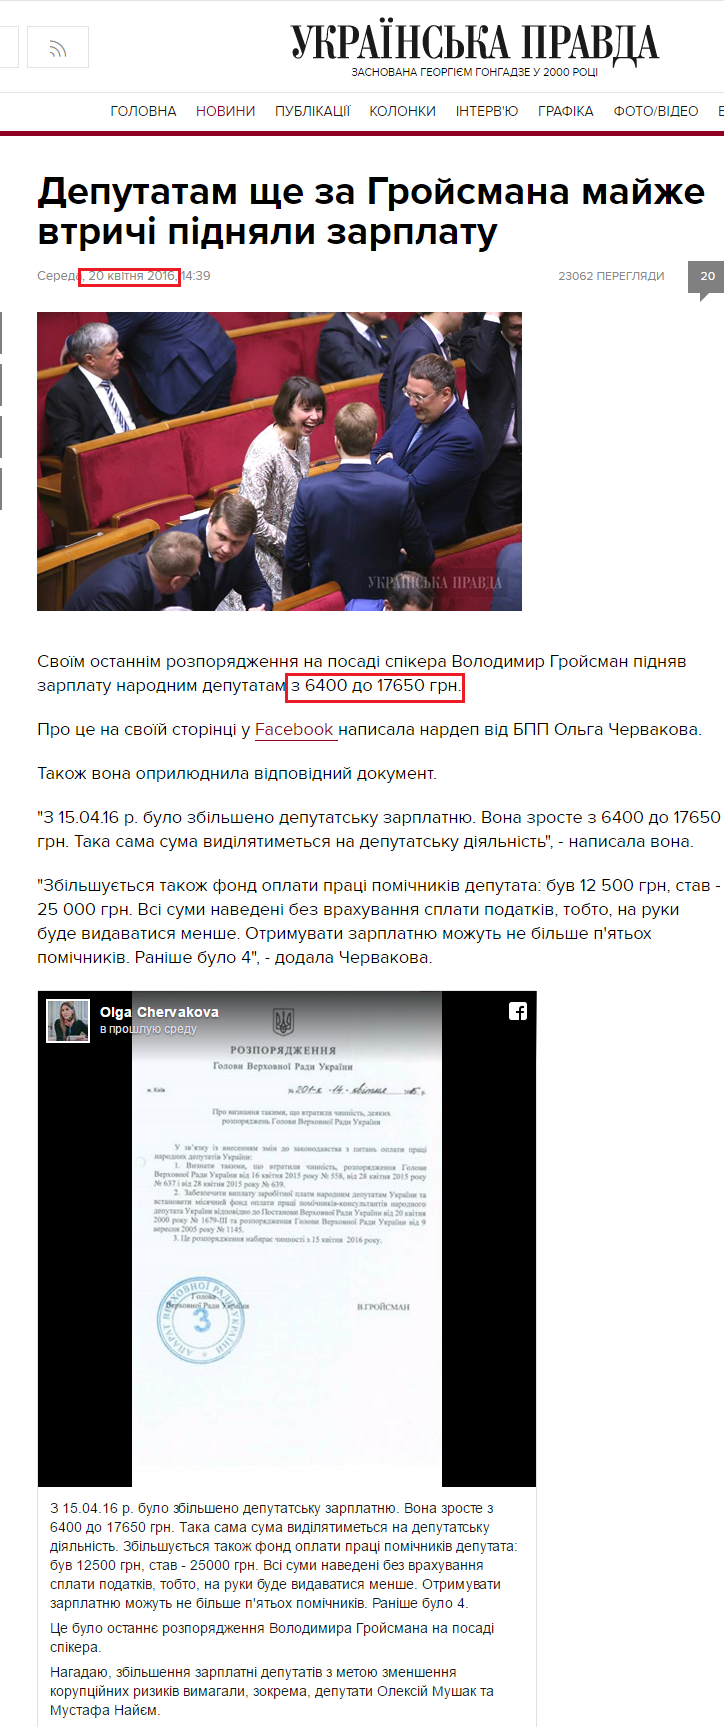 http://www.pravda.com.ua/news/2016/04/20/7106164/